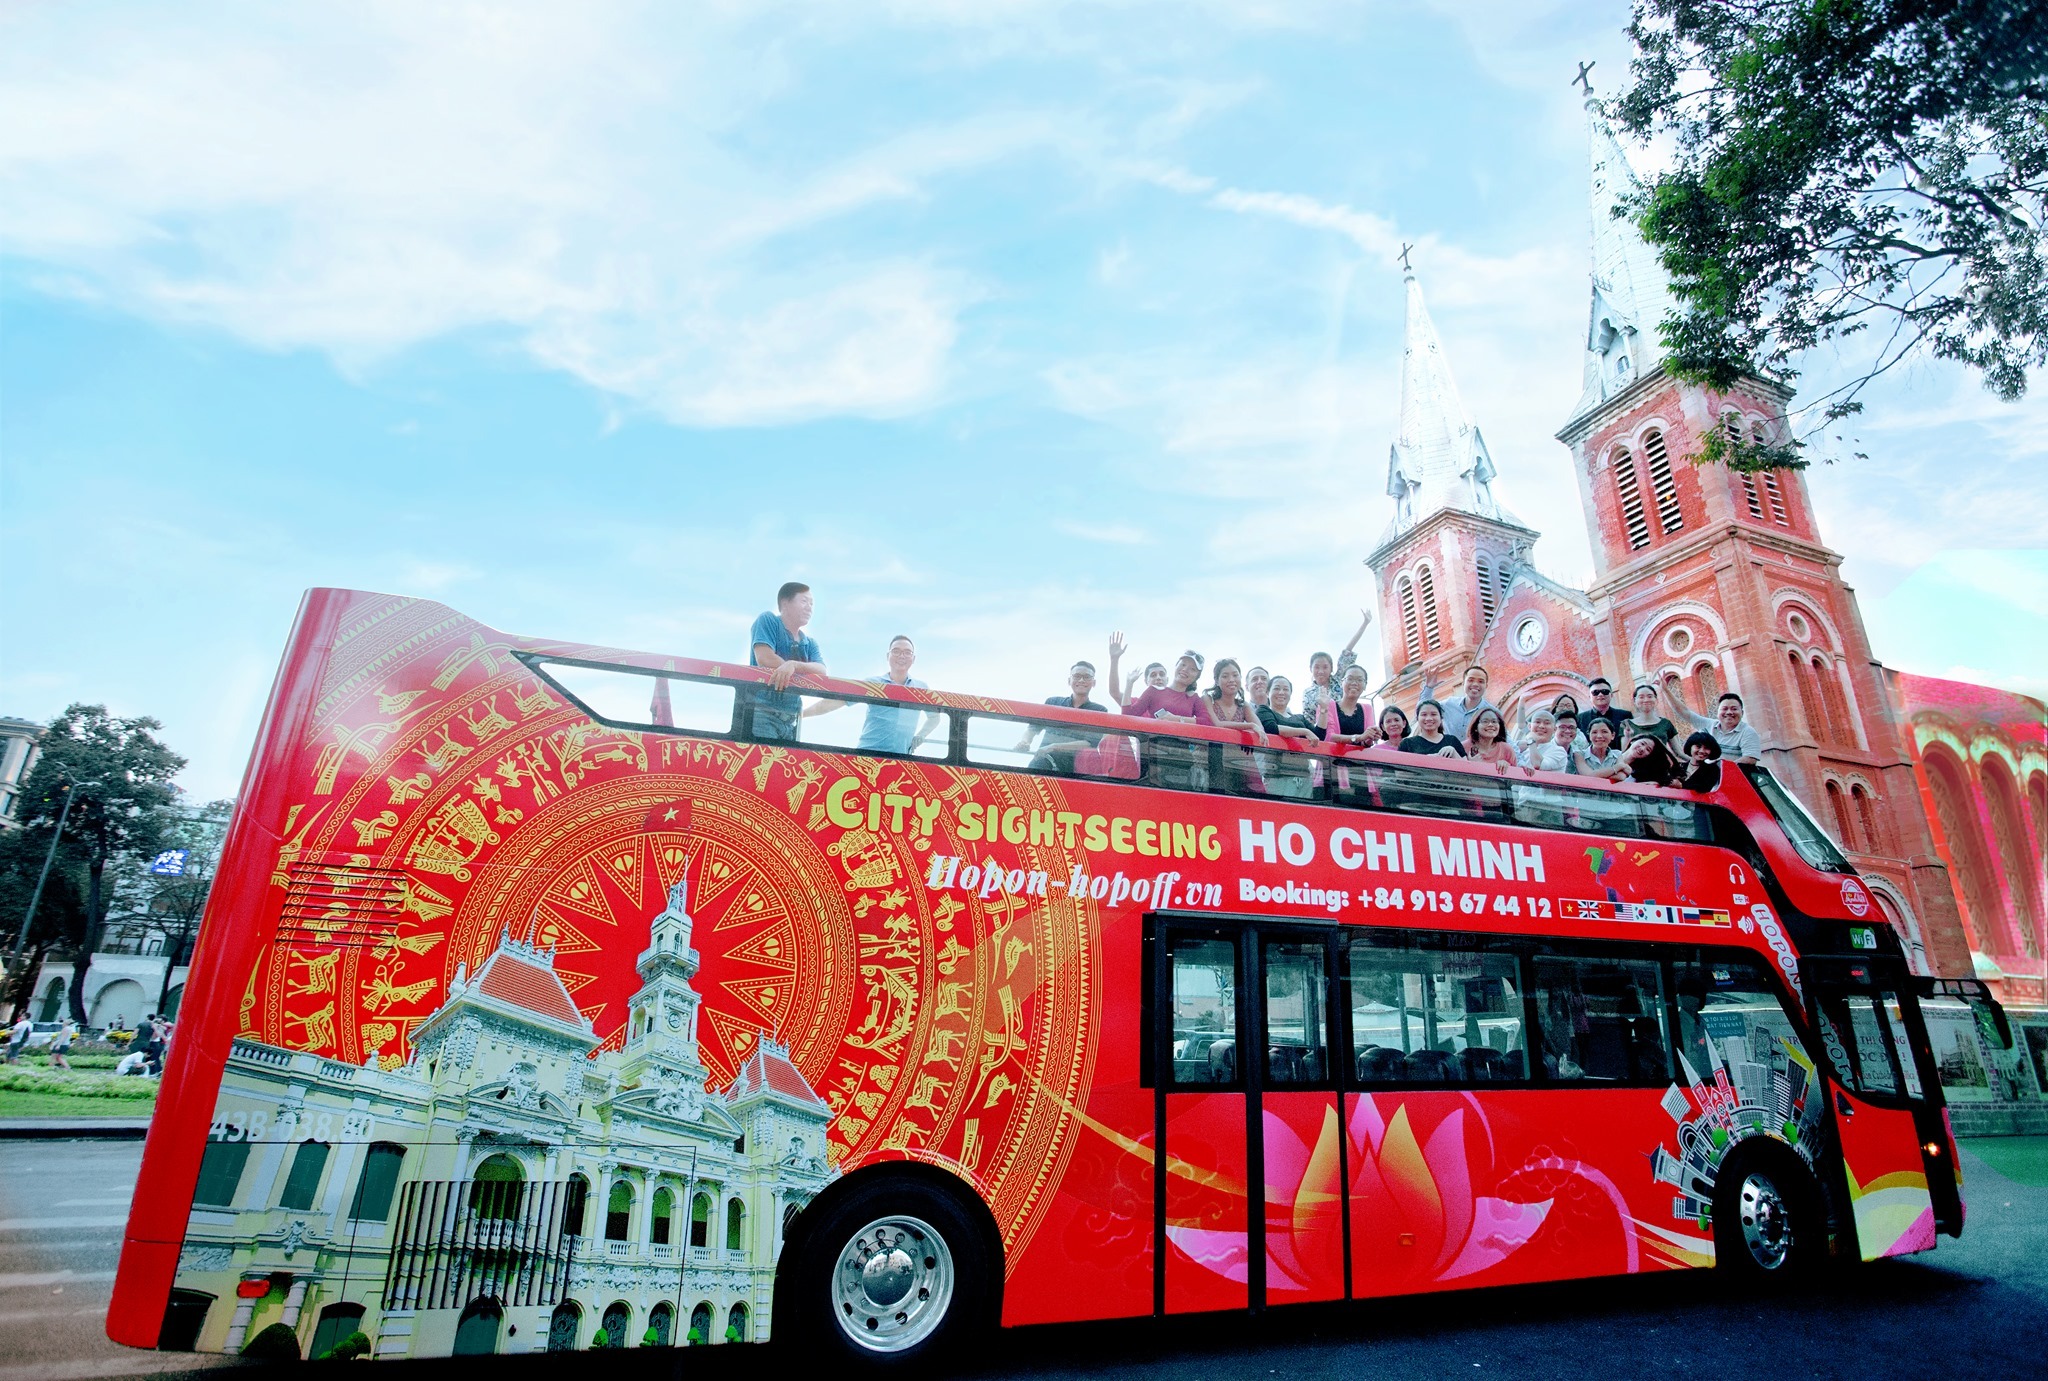 Xe buýt 2 tầng Sài Gòn: Khám phá Sài Gòn từ trên cao và cảm nhận hơi thở của thành phố sôi động với bức tranh đẹp đến ngỡ ngàng. Hãy trải nghiệm cuộc hành trình thú vị với xe buýt 2 tầng Sài Gòn ngay hôm nay!